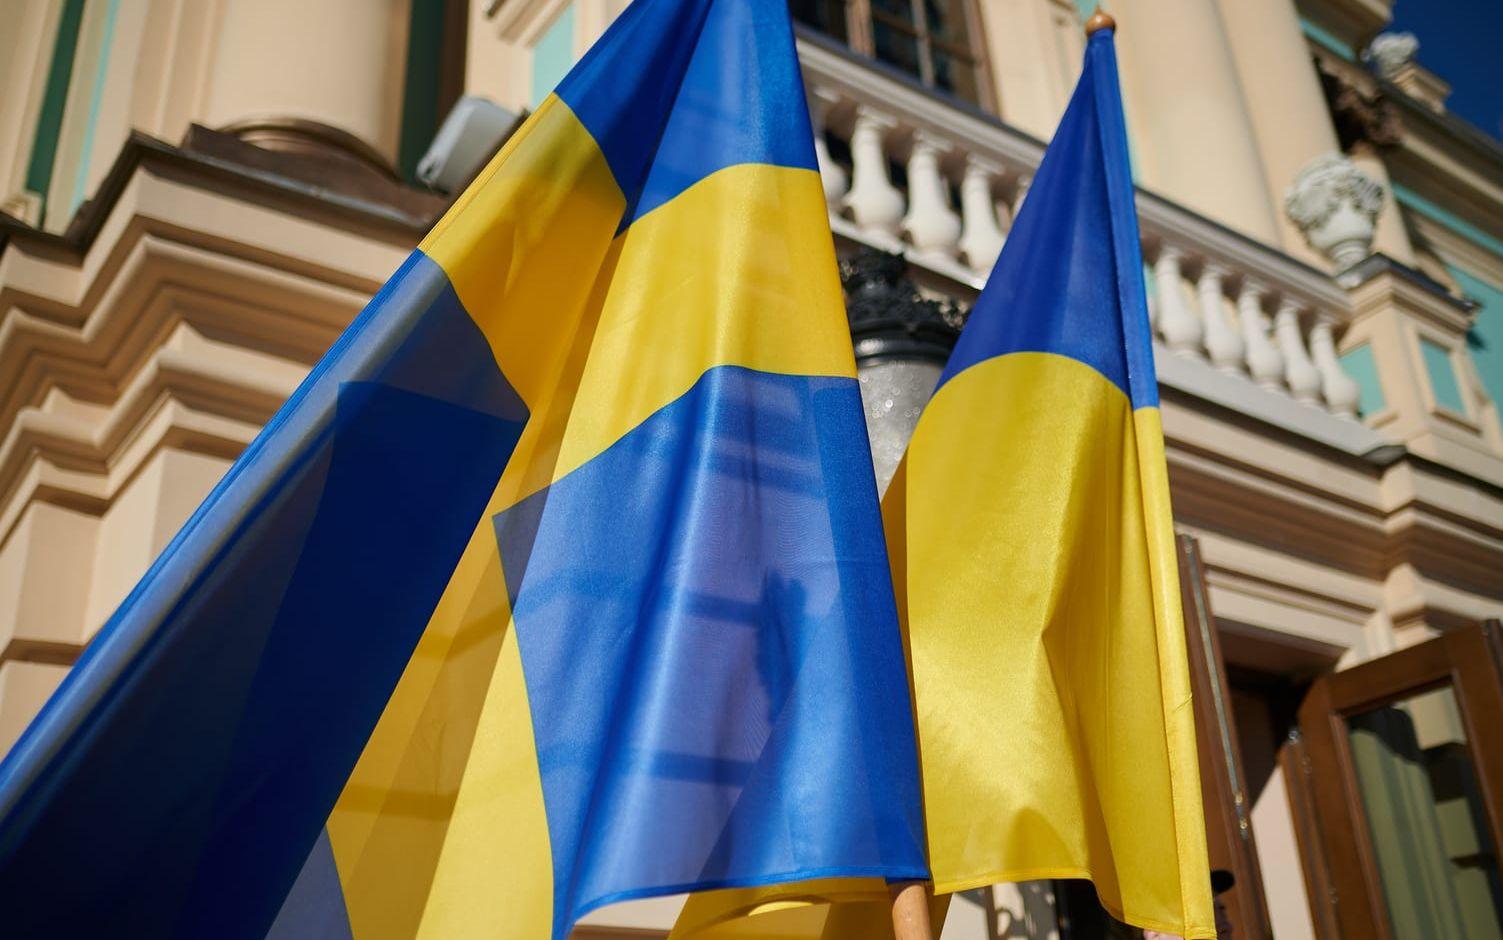 Utanför presidentpalatset hade Sveriges flagga hissats bredvid Ukrainas